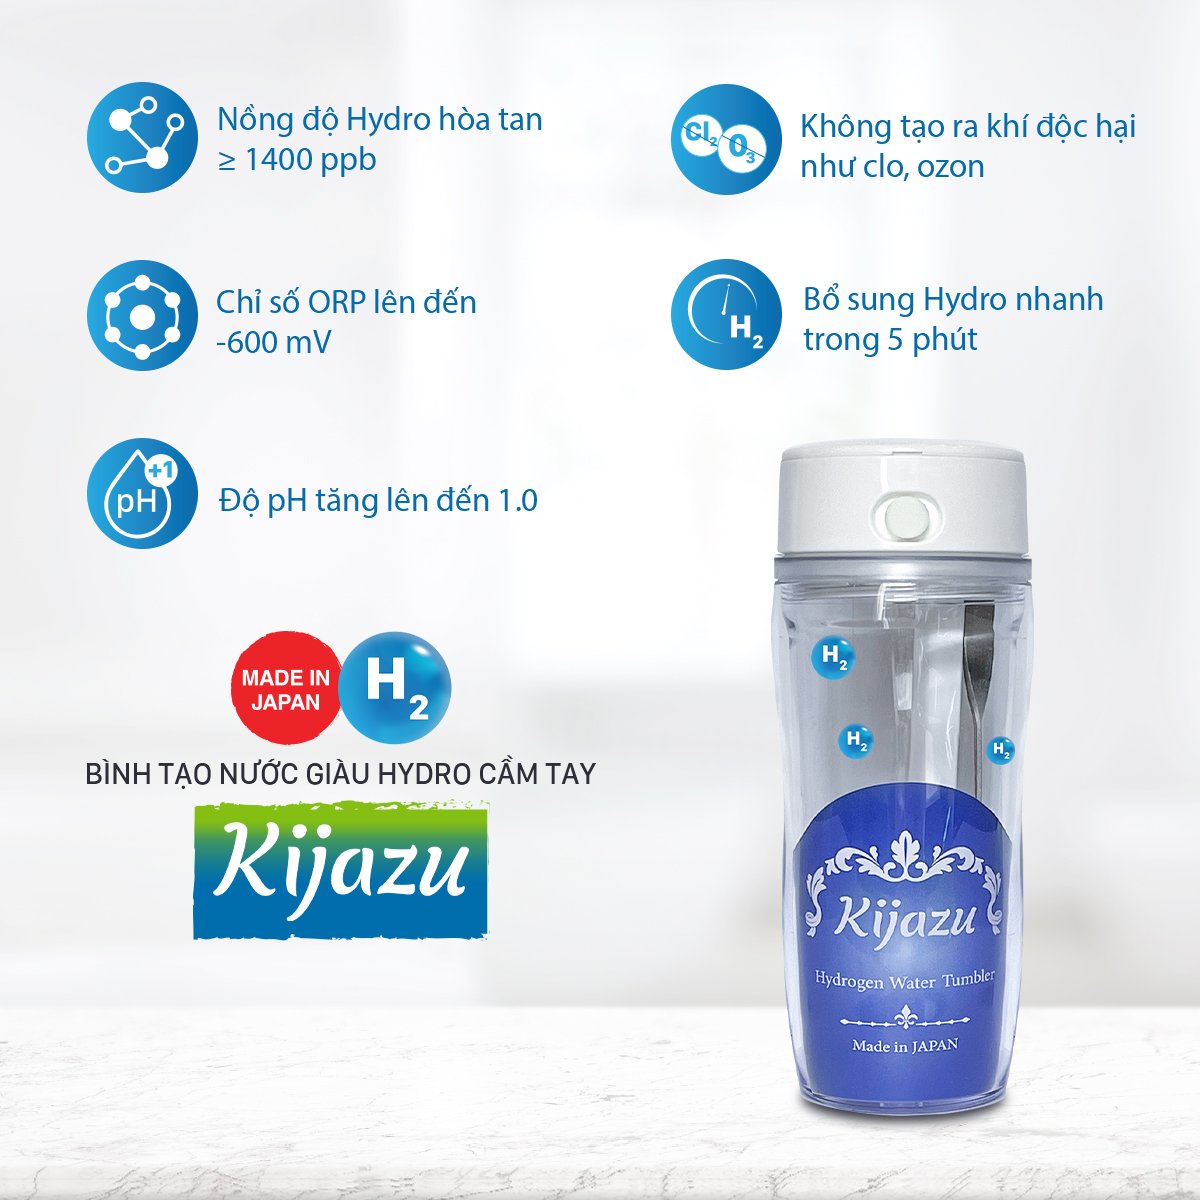 Bình tạo nước giàu Hydro cầm tay Kijazu - Thiết bị chăm sóc sức khỏe, sắc đẹp nhỏ gọn, tiện lợi, dễ mang theo